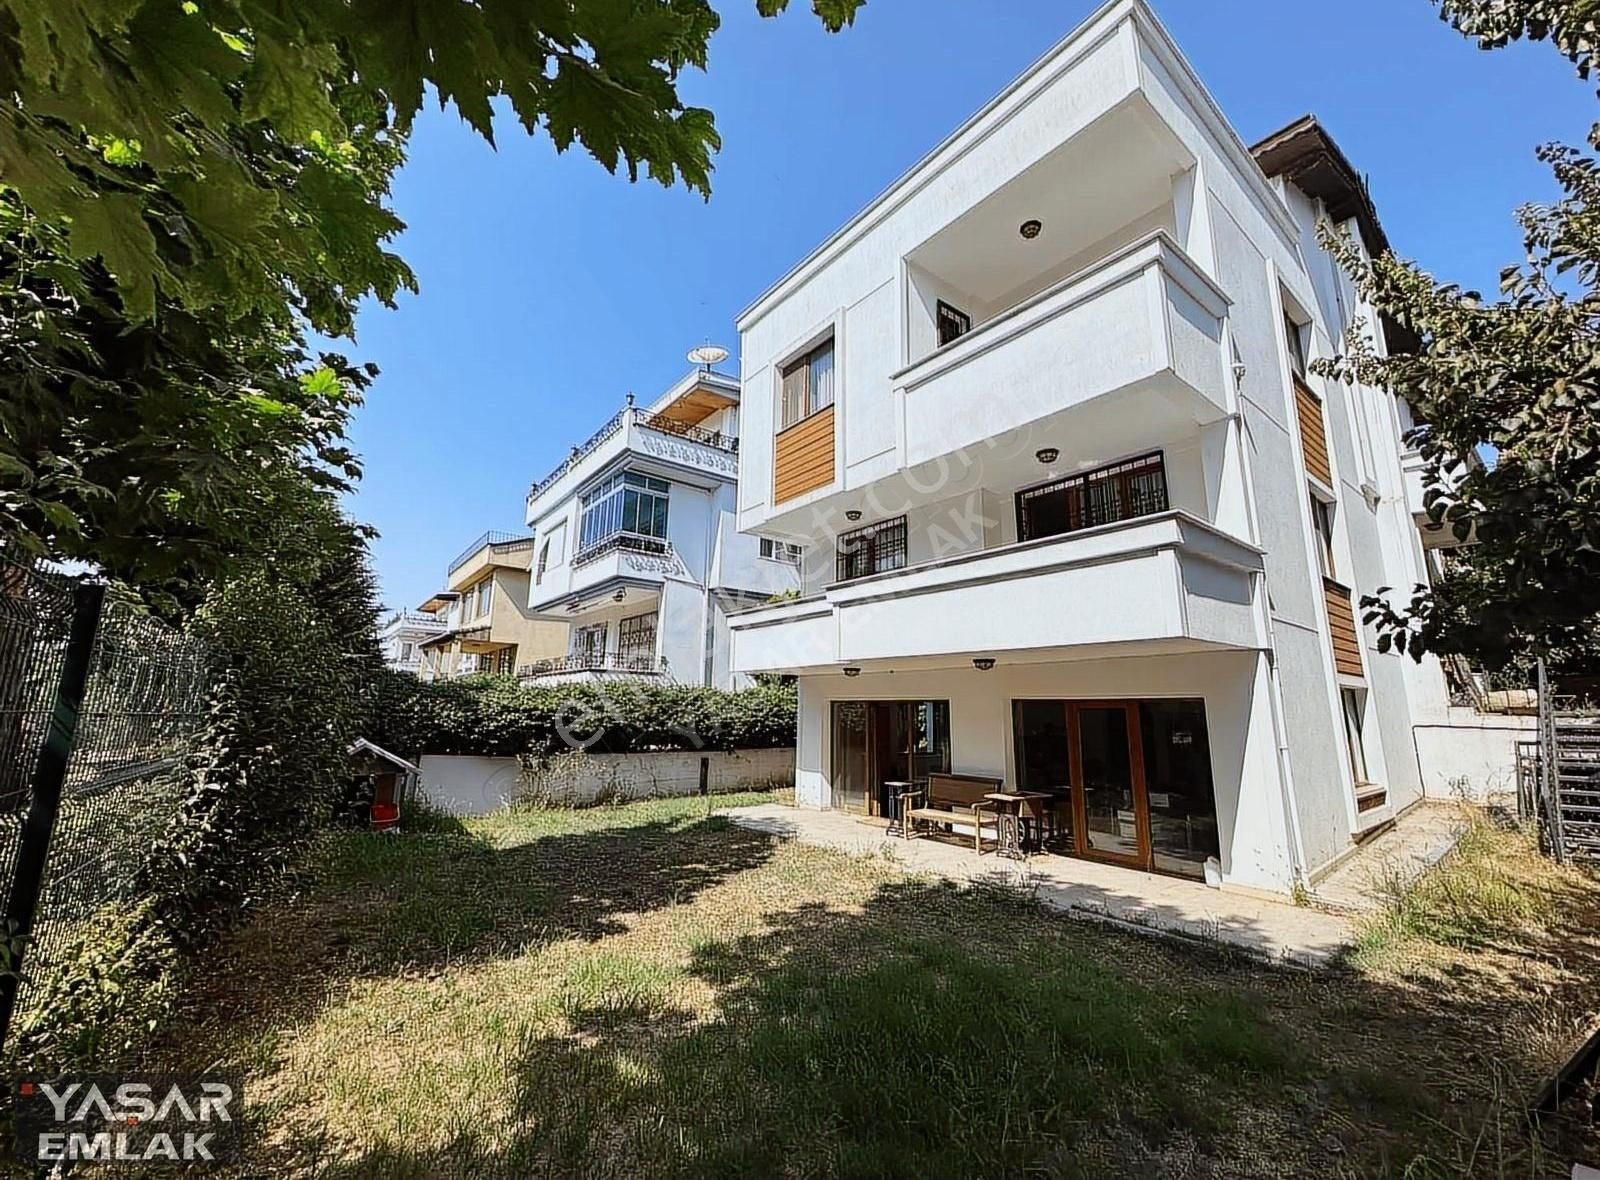 Darıca Bayramoğlu Satılık Villa YAŞAR EMLAK'TAN BALYANOZ'DA 5+2 360M² ARSA İÇ.SAT MÜSTAKİL VİLLA